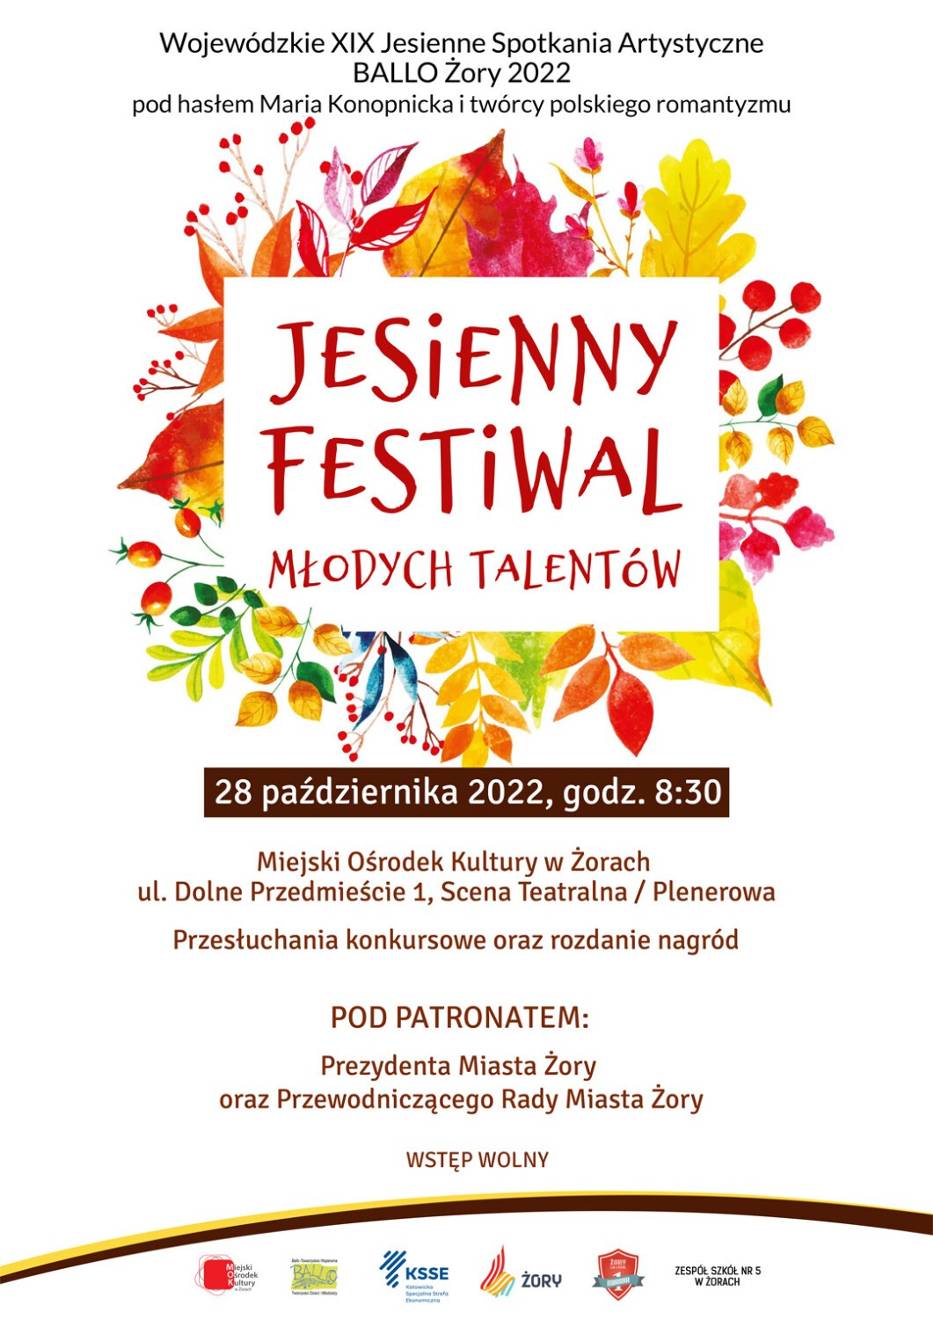 Niebawem ruszy Jesienny Festiwal Młodych Talentów w Żorach!